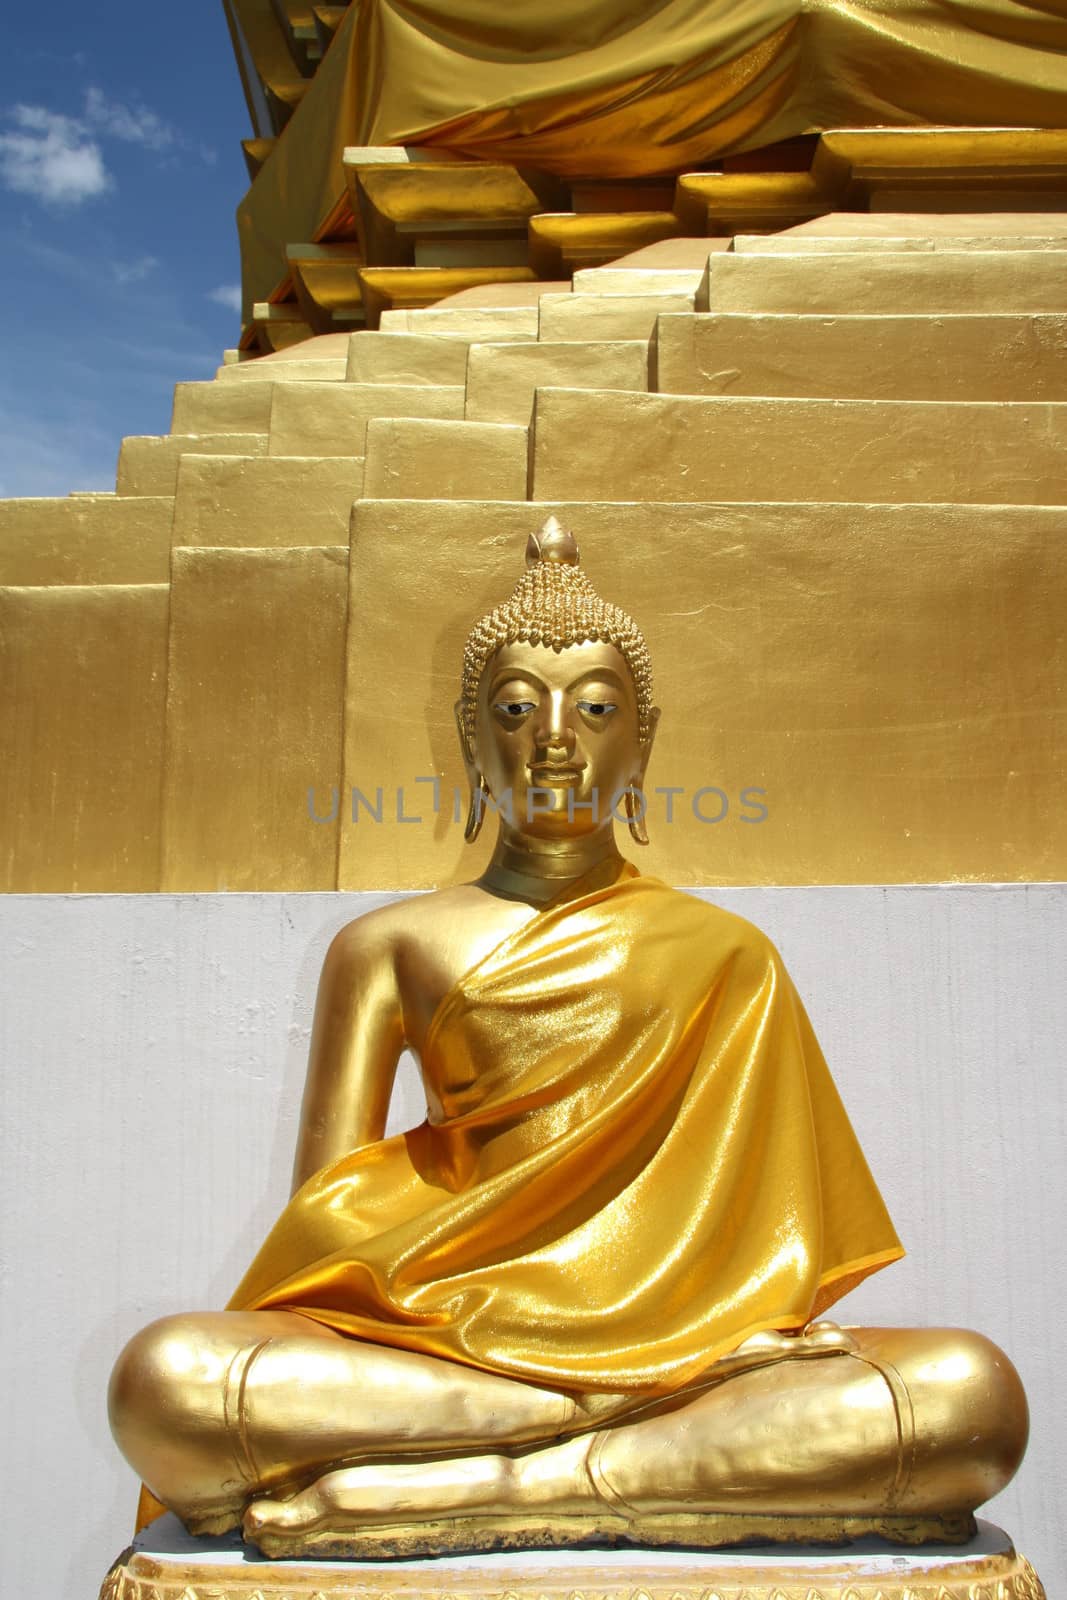 Golden Buddha in Thailand by jjspring